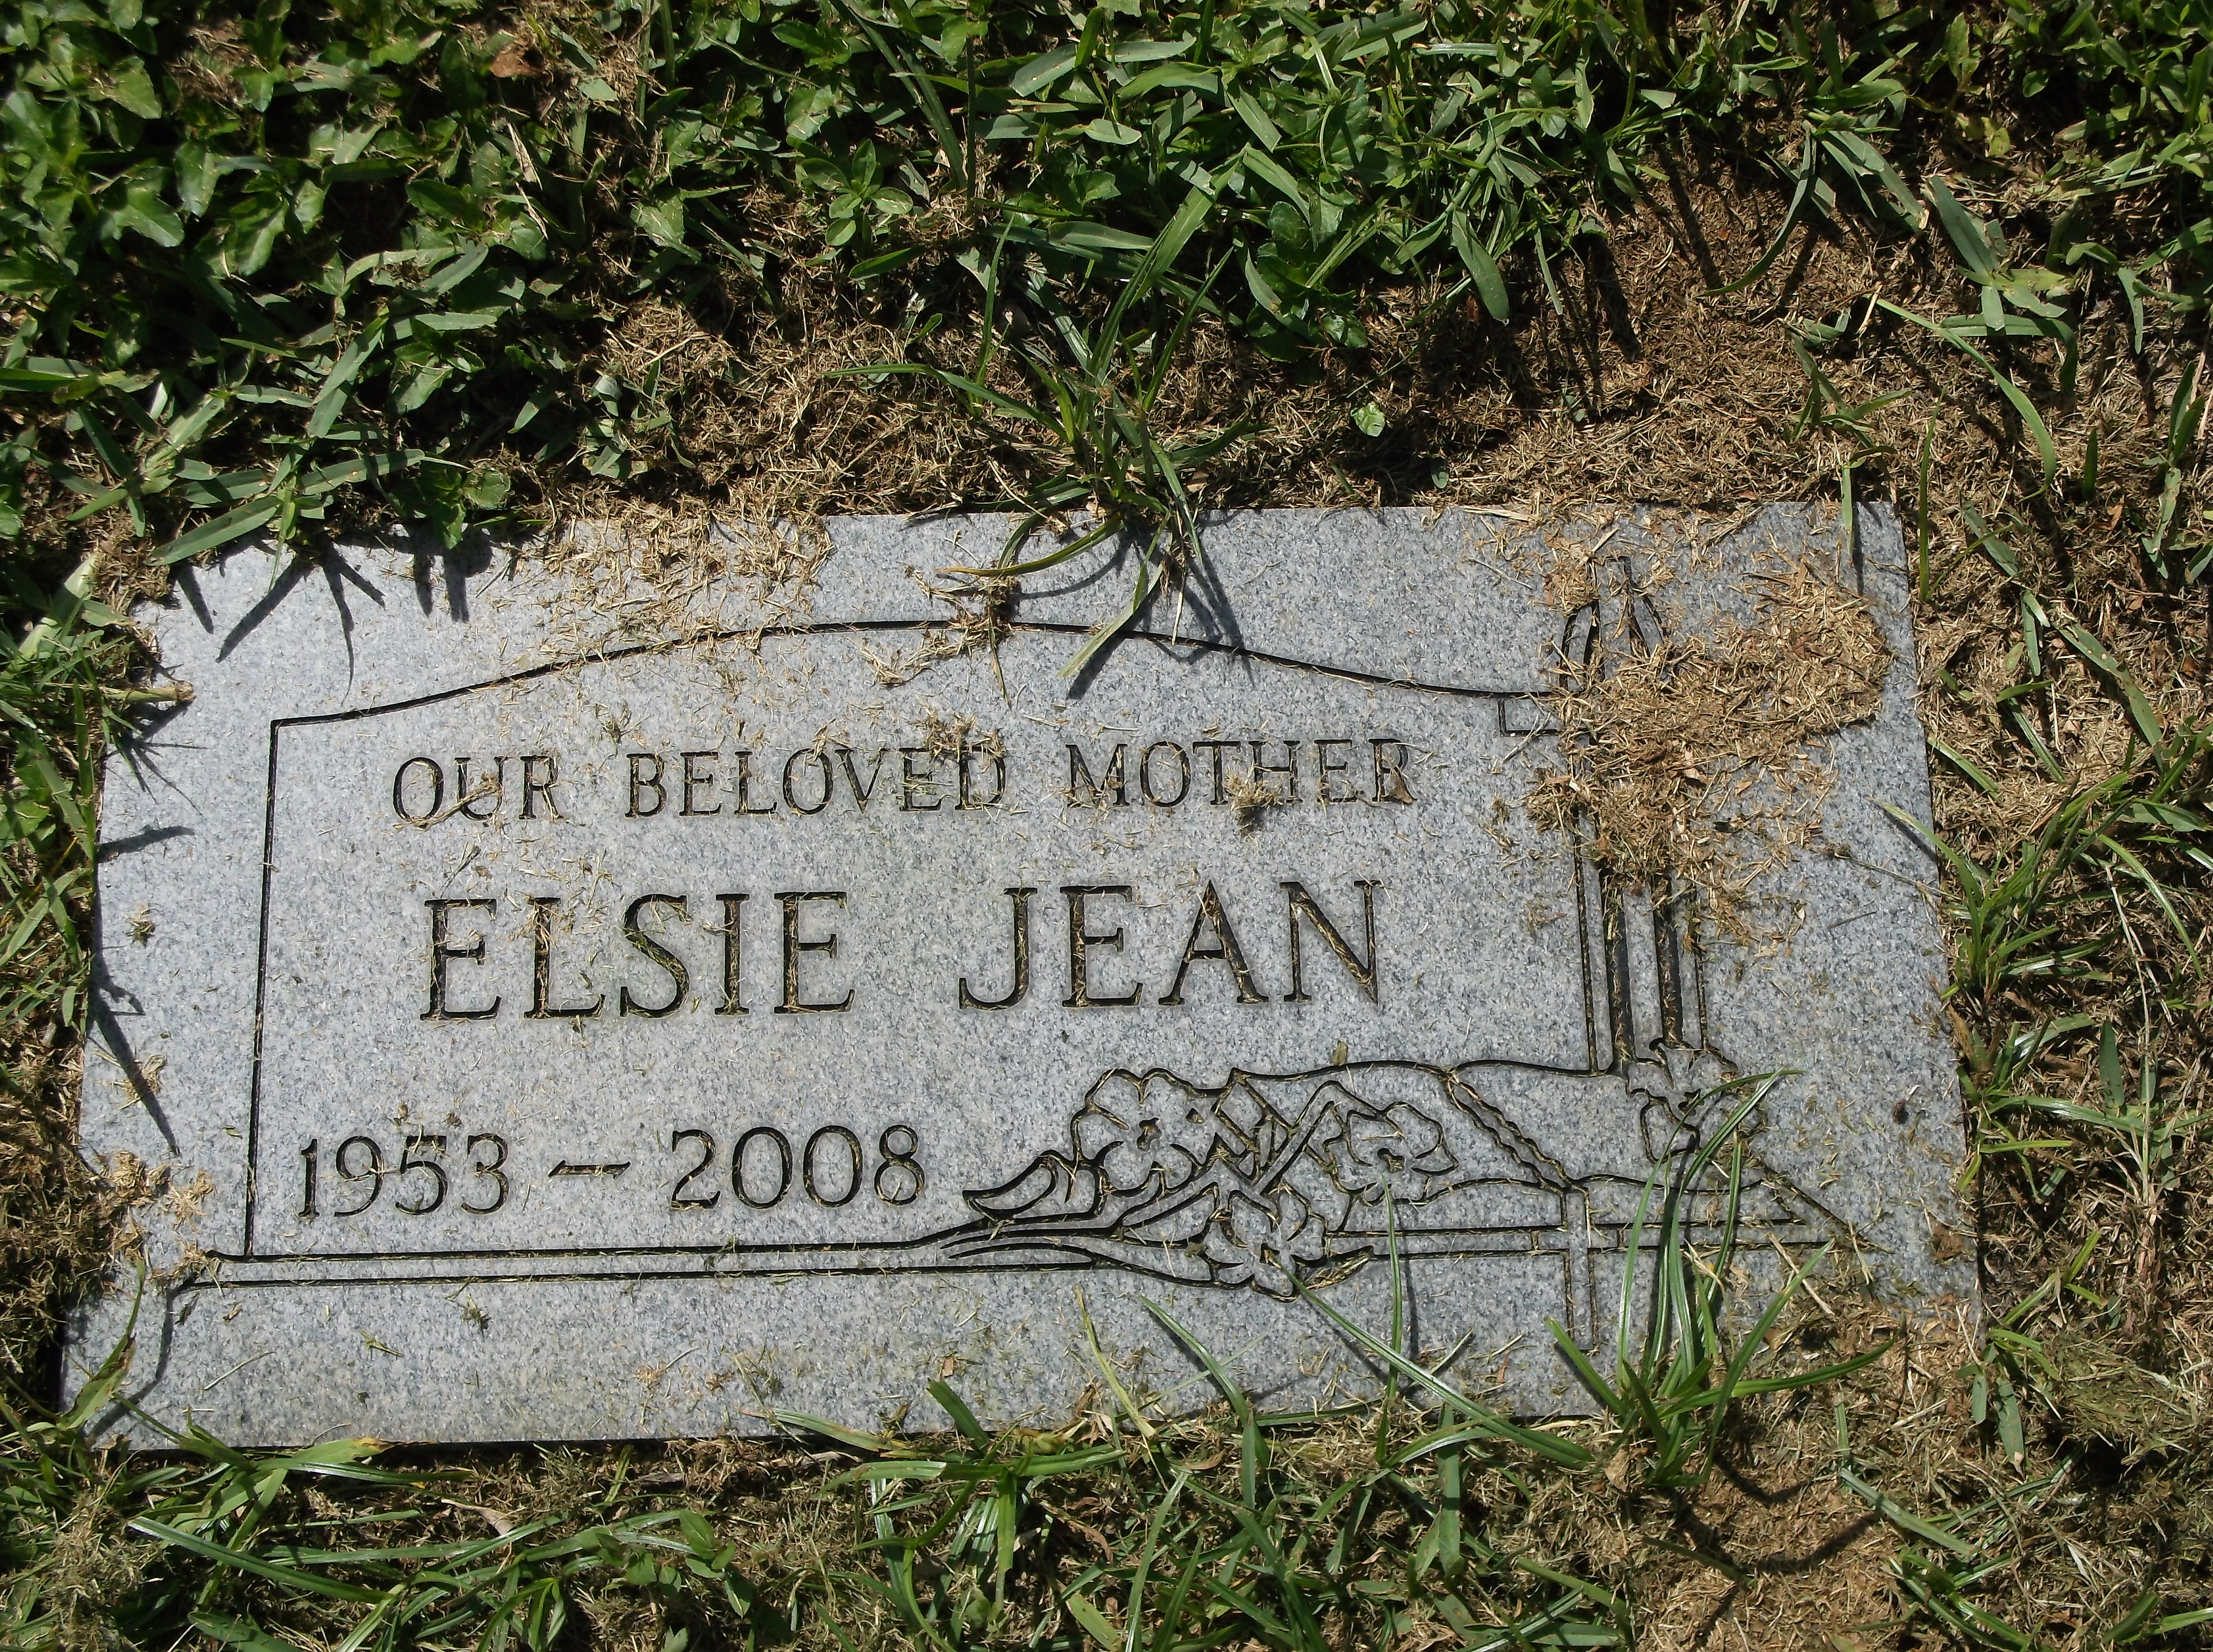 Elsie Jean